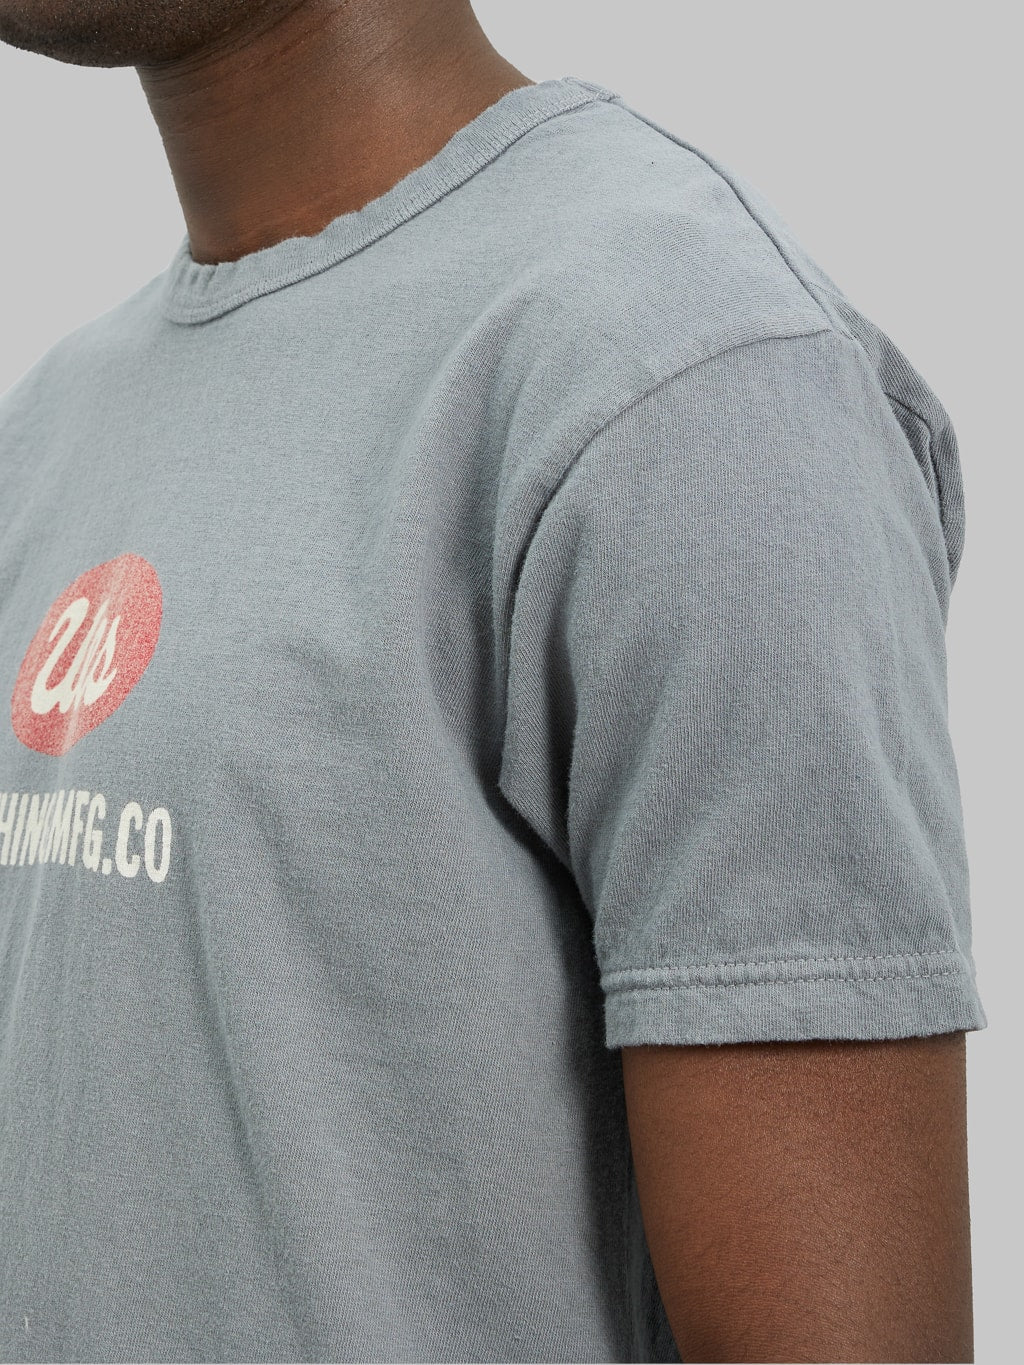 ues logo tshirt grey slim fit vintage sleeve details